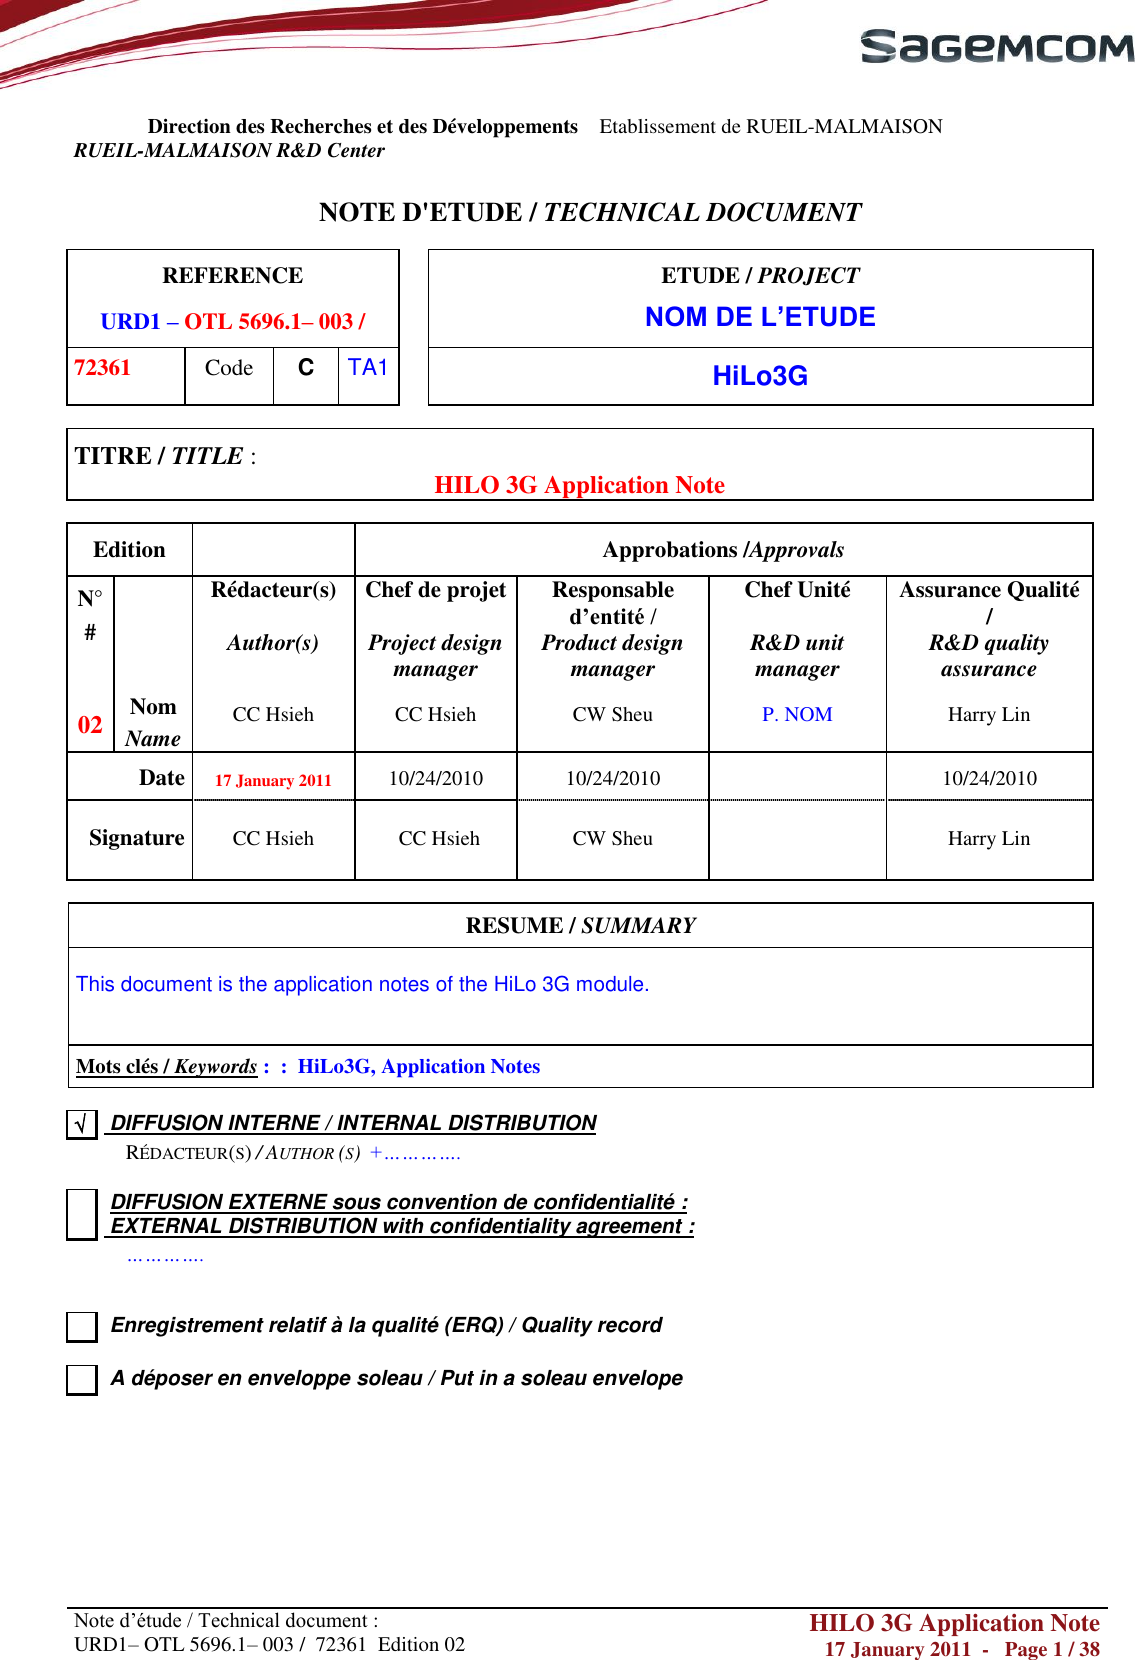       Note d‘étude / Technical document : URD1– OTL 5696.1– 003 /  72361  Edition 02 HILO 3G Application Note 17 January 2011  -   Page 1 / 38      Direction des Recherches et des Développements    Etablissement de RUEIL-MALMAISON RUEIL-MALMAISON R&amp;D Center   NOTE D&apos;ETUDE / TECHNICAL DOCUMENT  REFERENCE URD1 – OTL 5696.1– 003 /  ETUDE / PROJECT NOM DE L’ETUDE 72361 Code C TA1  HiLo3G  TITRE / TITLE :  HILO 3G Application Note  Edition  Approbations /Approvals N° #  Rédacteur(s)  Author(s)  Chef de projet   Project design manager Responsable d’entité /  Product design manager Chef Unité   R&amp;D unit manager Assurance Qualité /  R&amp;D quality assurance 02 Nom Name CC Hsieh CC Hsieh CW Sheu P. NOM Harry Lin Date 17 January 2011 10/24/2010 10/24/2010  10/24/2010 Signature CC Hsieh CC Hsieh CW Sheu  Harry Lin  RESUME / SUMMARY  This document is the application notes of the HiLo 3G module.   Mots clés / Keywords :  :  HiLo3G, Application Notes    DIFFUSION INTERNE / INTERNAL DISTRIBUTION  RÉDACTEUR(S) / AUTHOR (S)  +………….    DIFFUSION EXTERNE sous convention de confidentialité :  EXTERNAL DISTRIBUTION with confidentiality agreement :   ………….     Enregistrement relatif à la qualité (ERQ) / Quality record     A déposer en enveloppe soleau / Put in a soleau envelope       